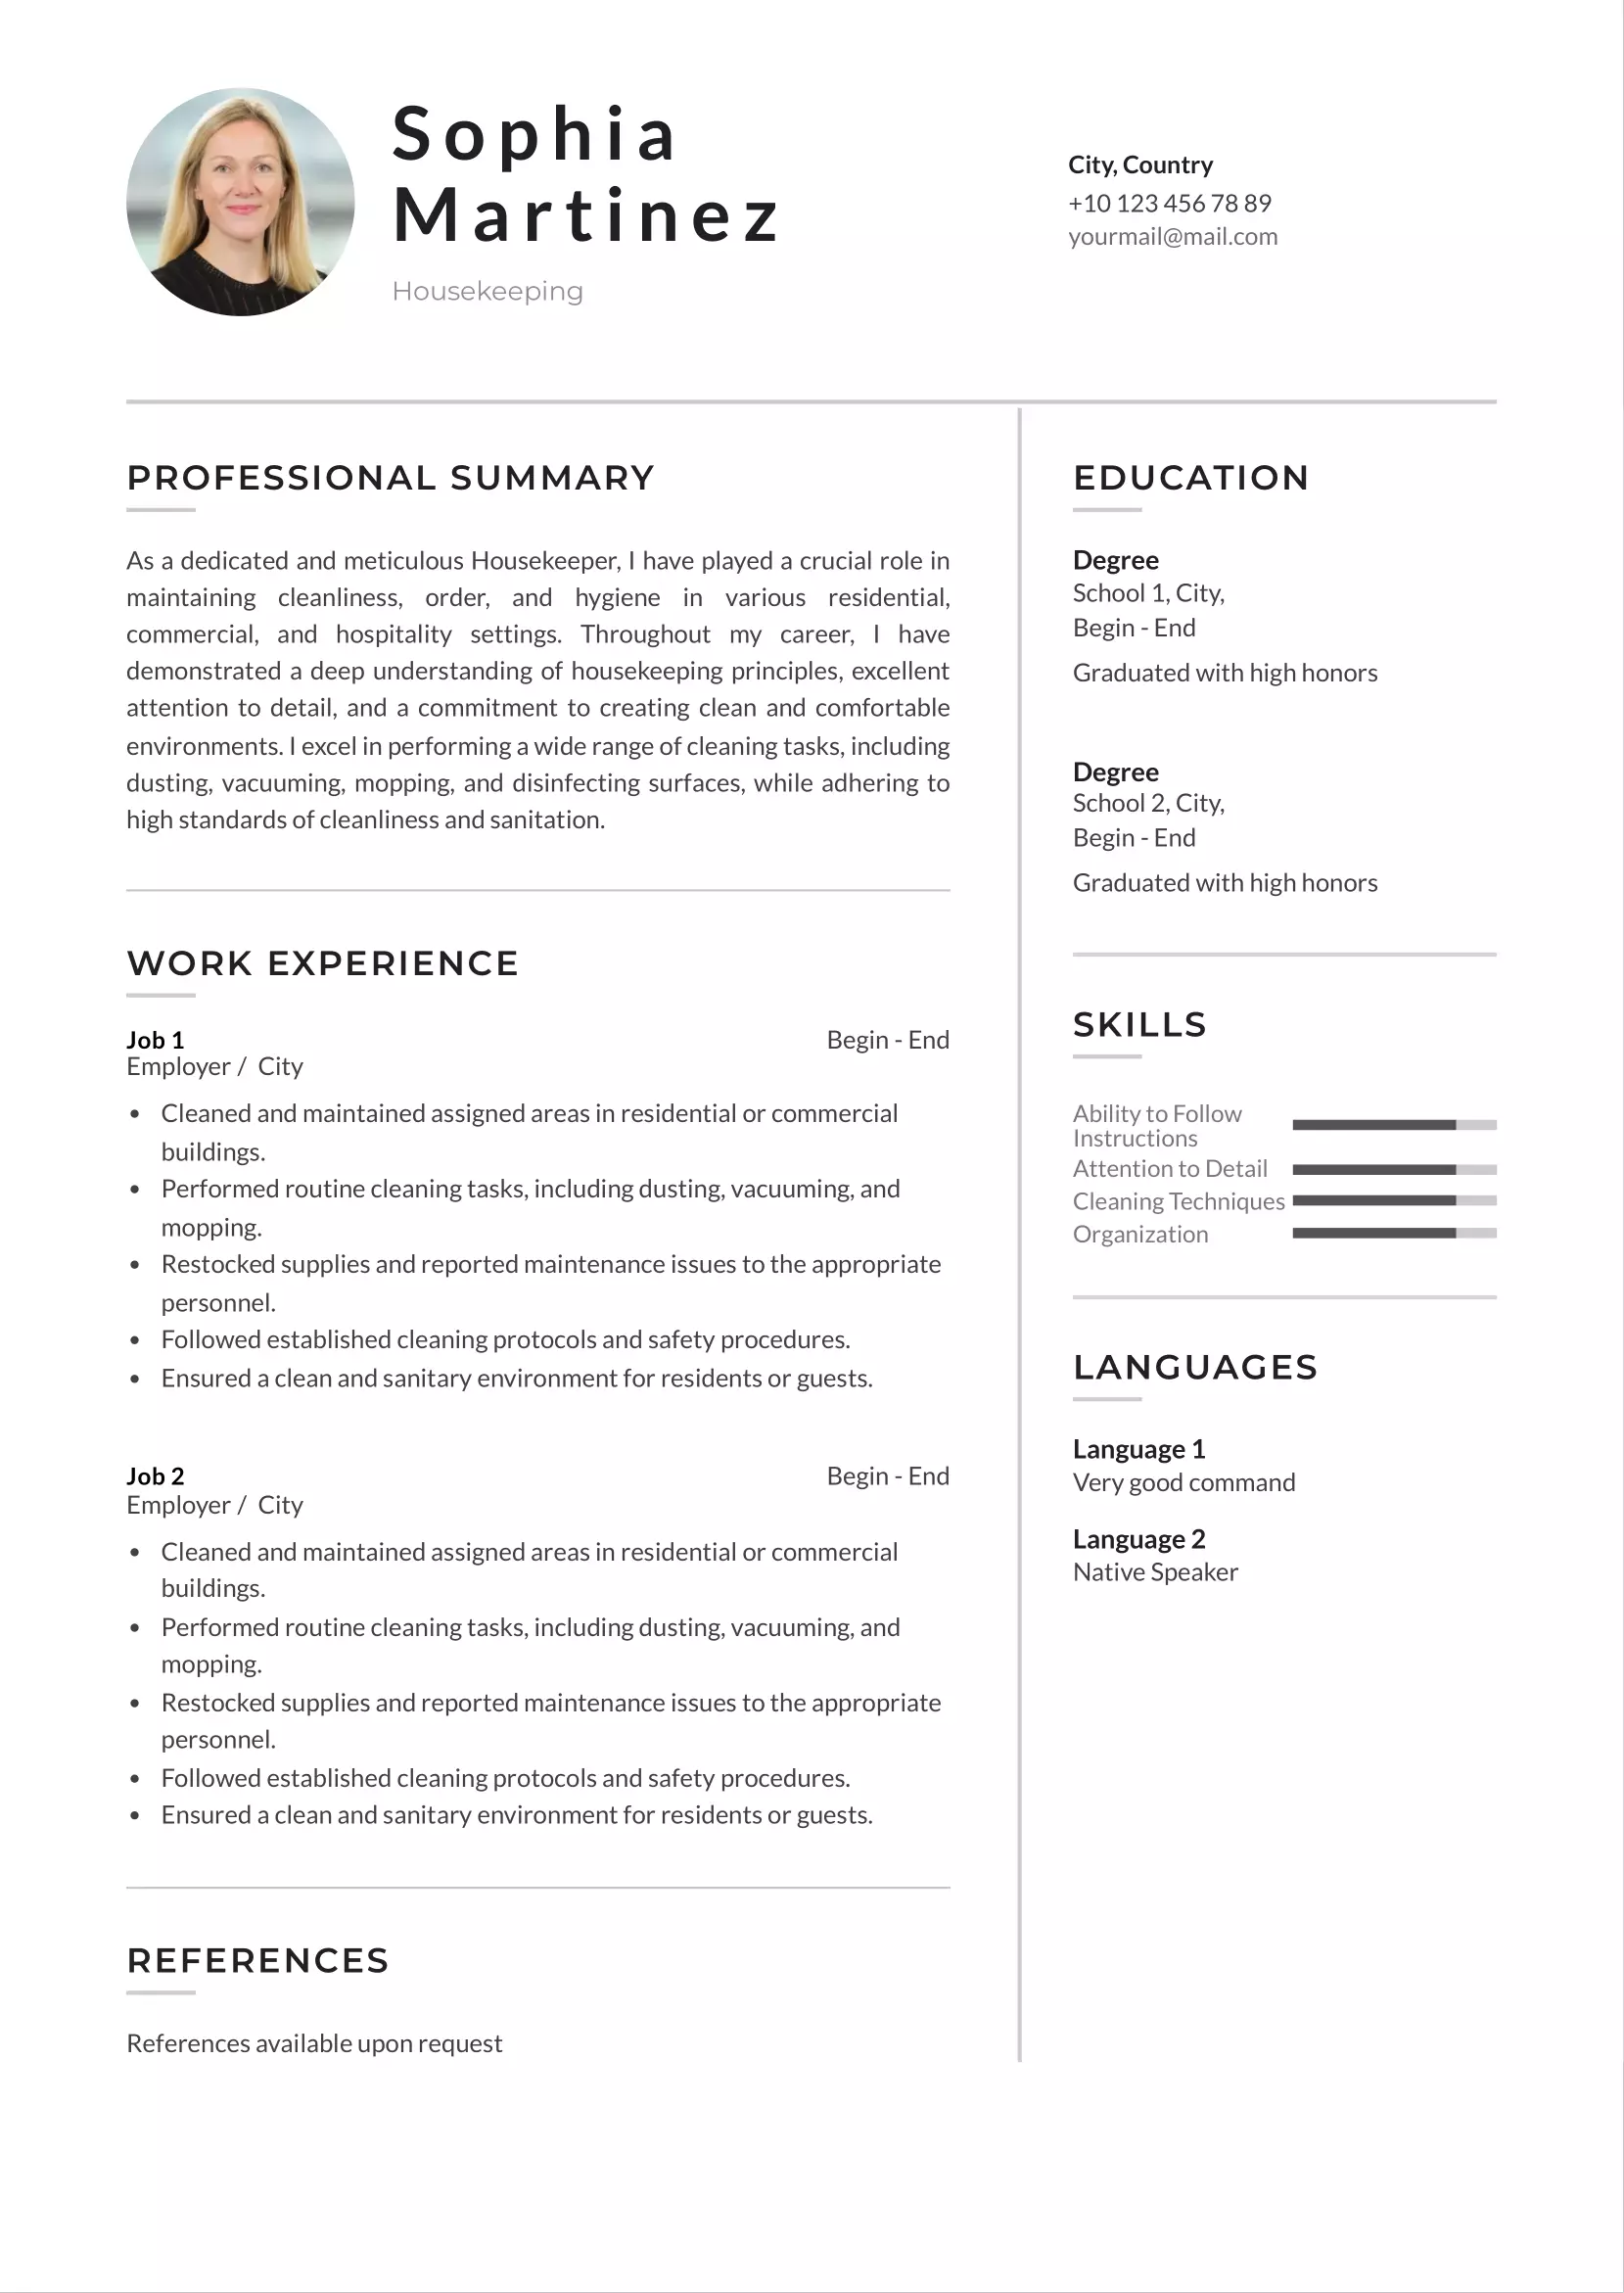 Housekeeping resume CV